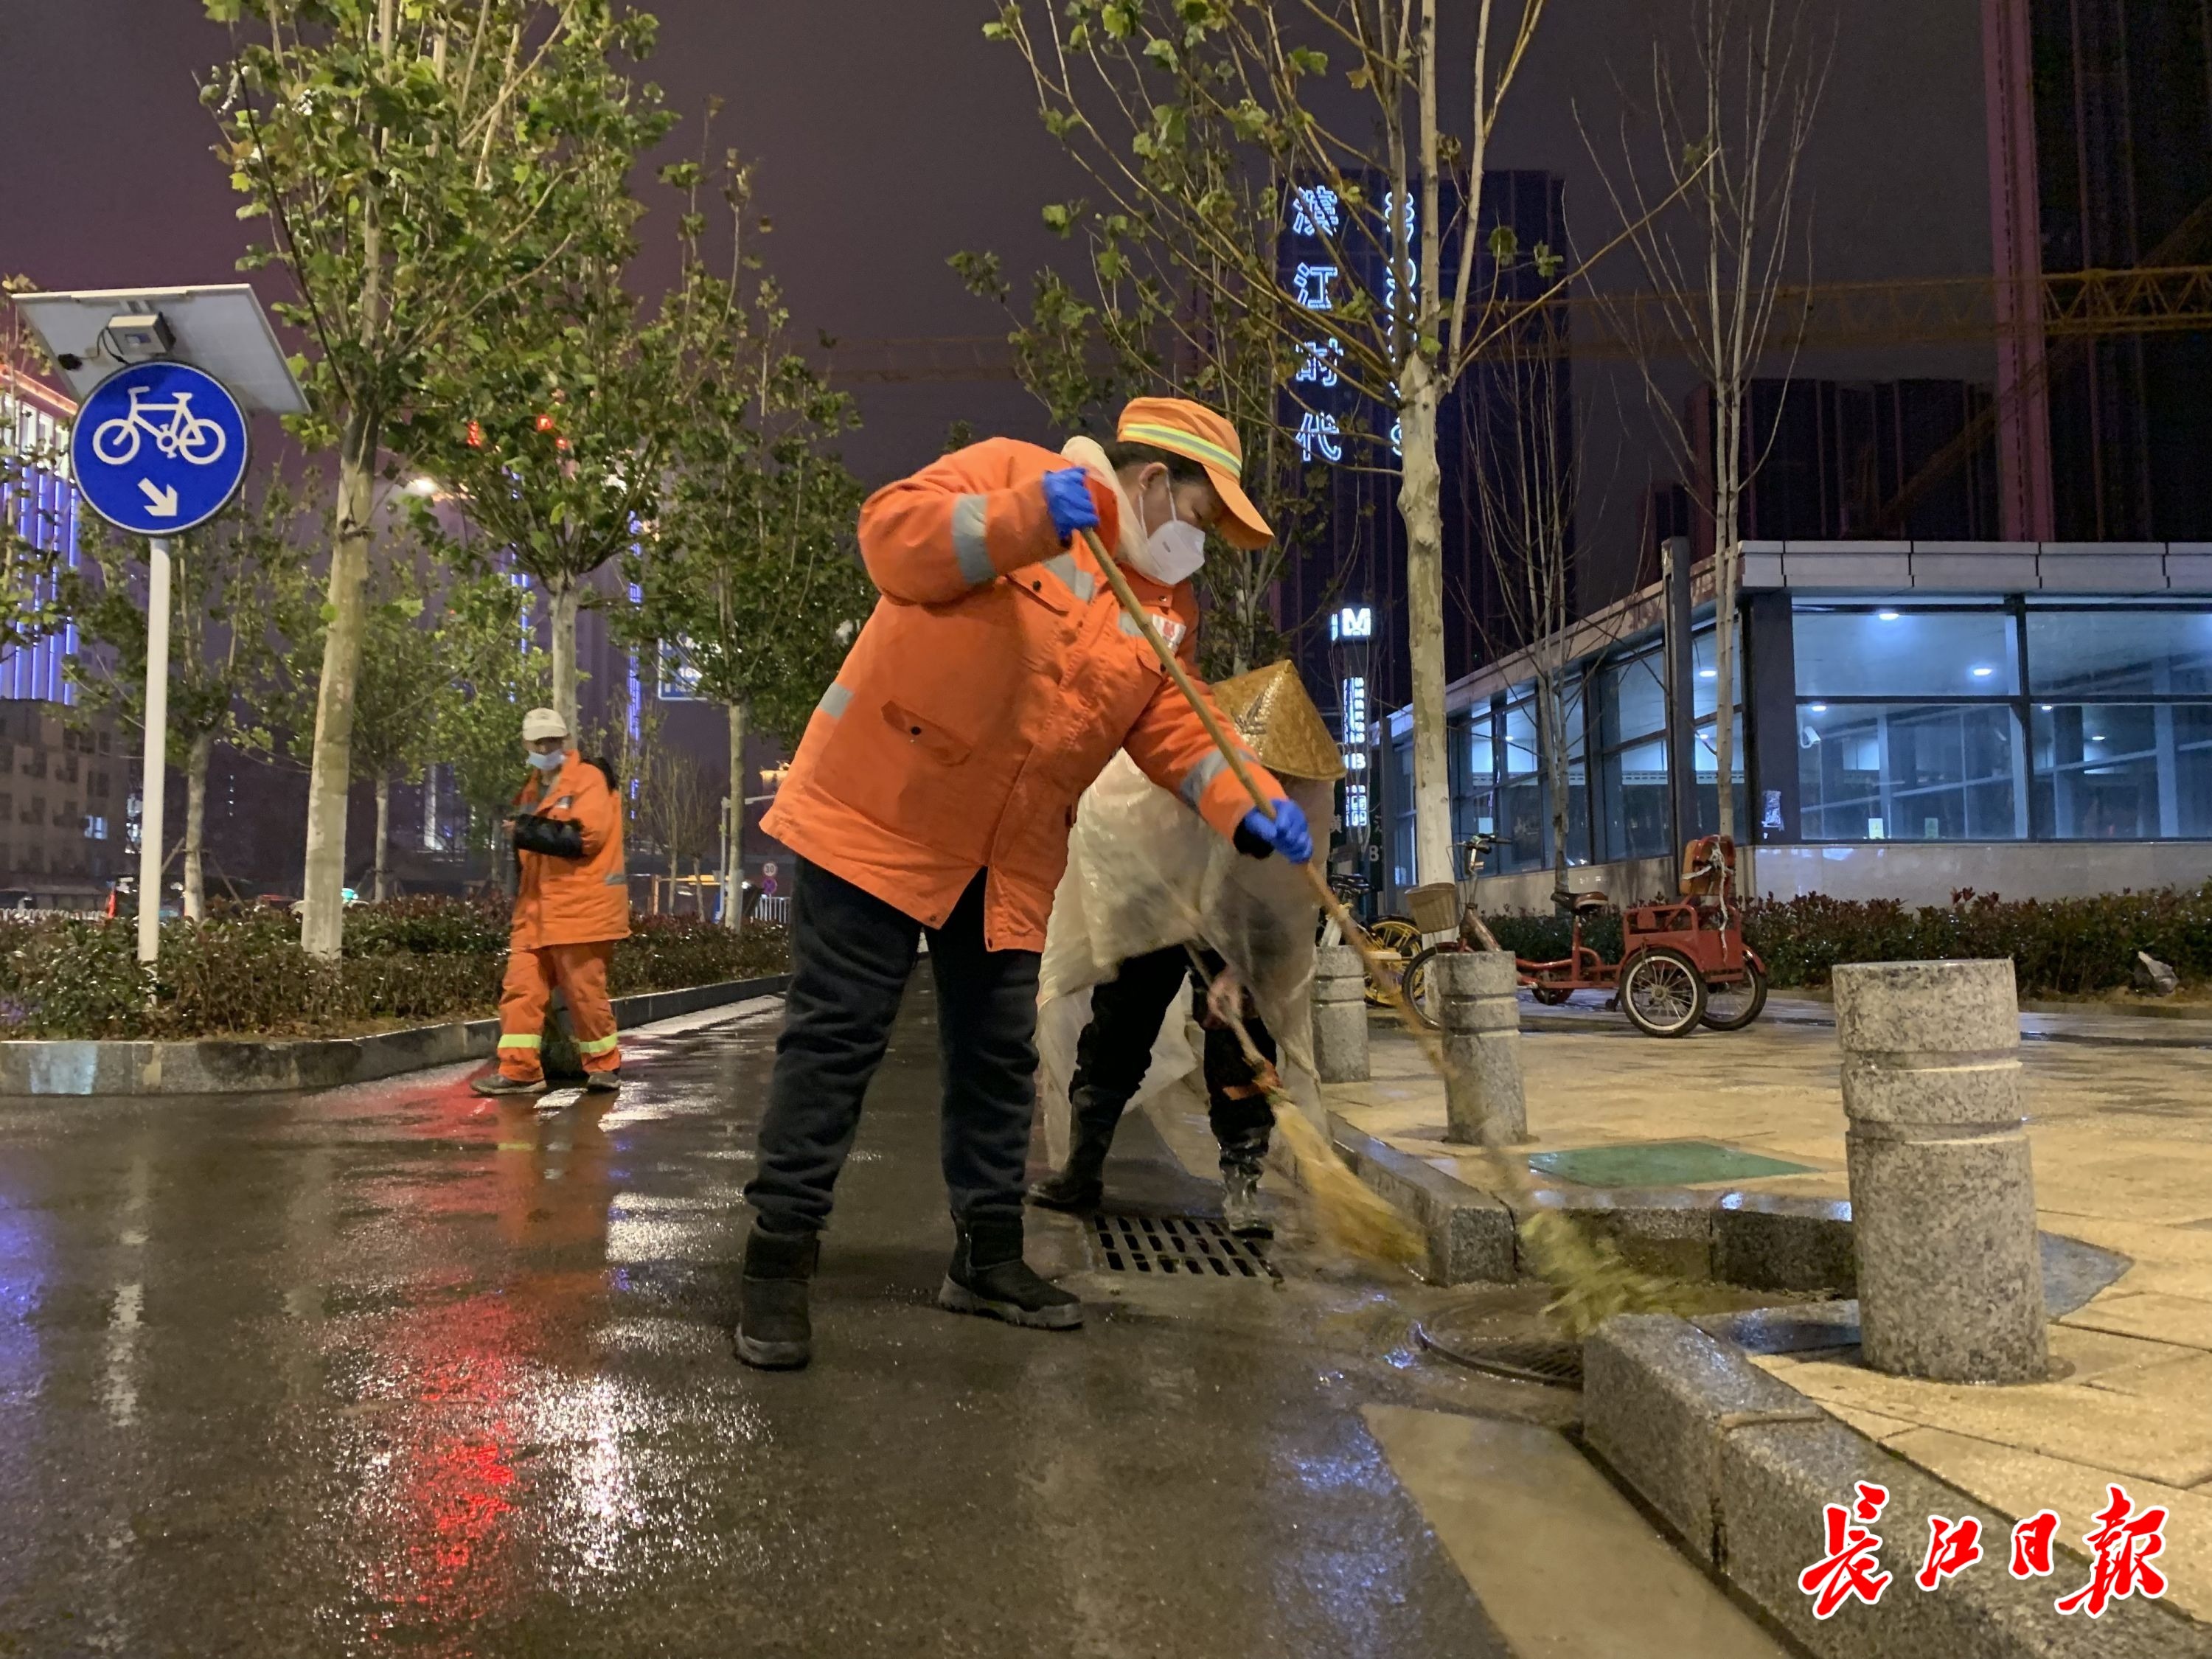 武汉28万环卫工人春节坚守岗位,守护城市整洁